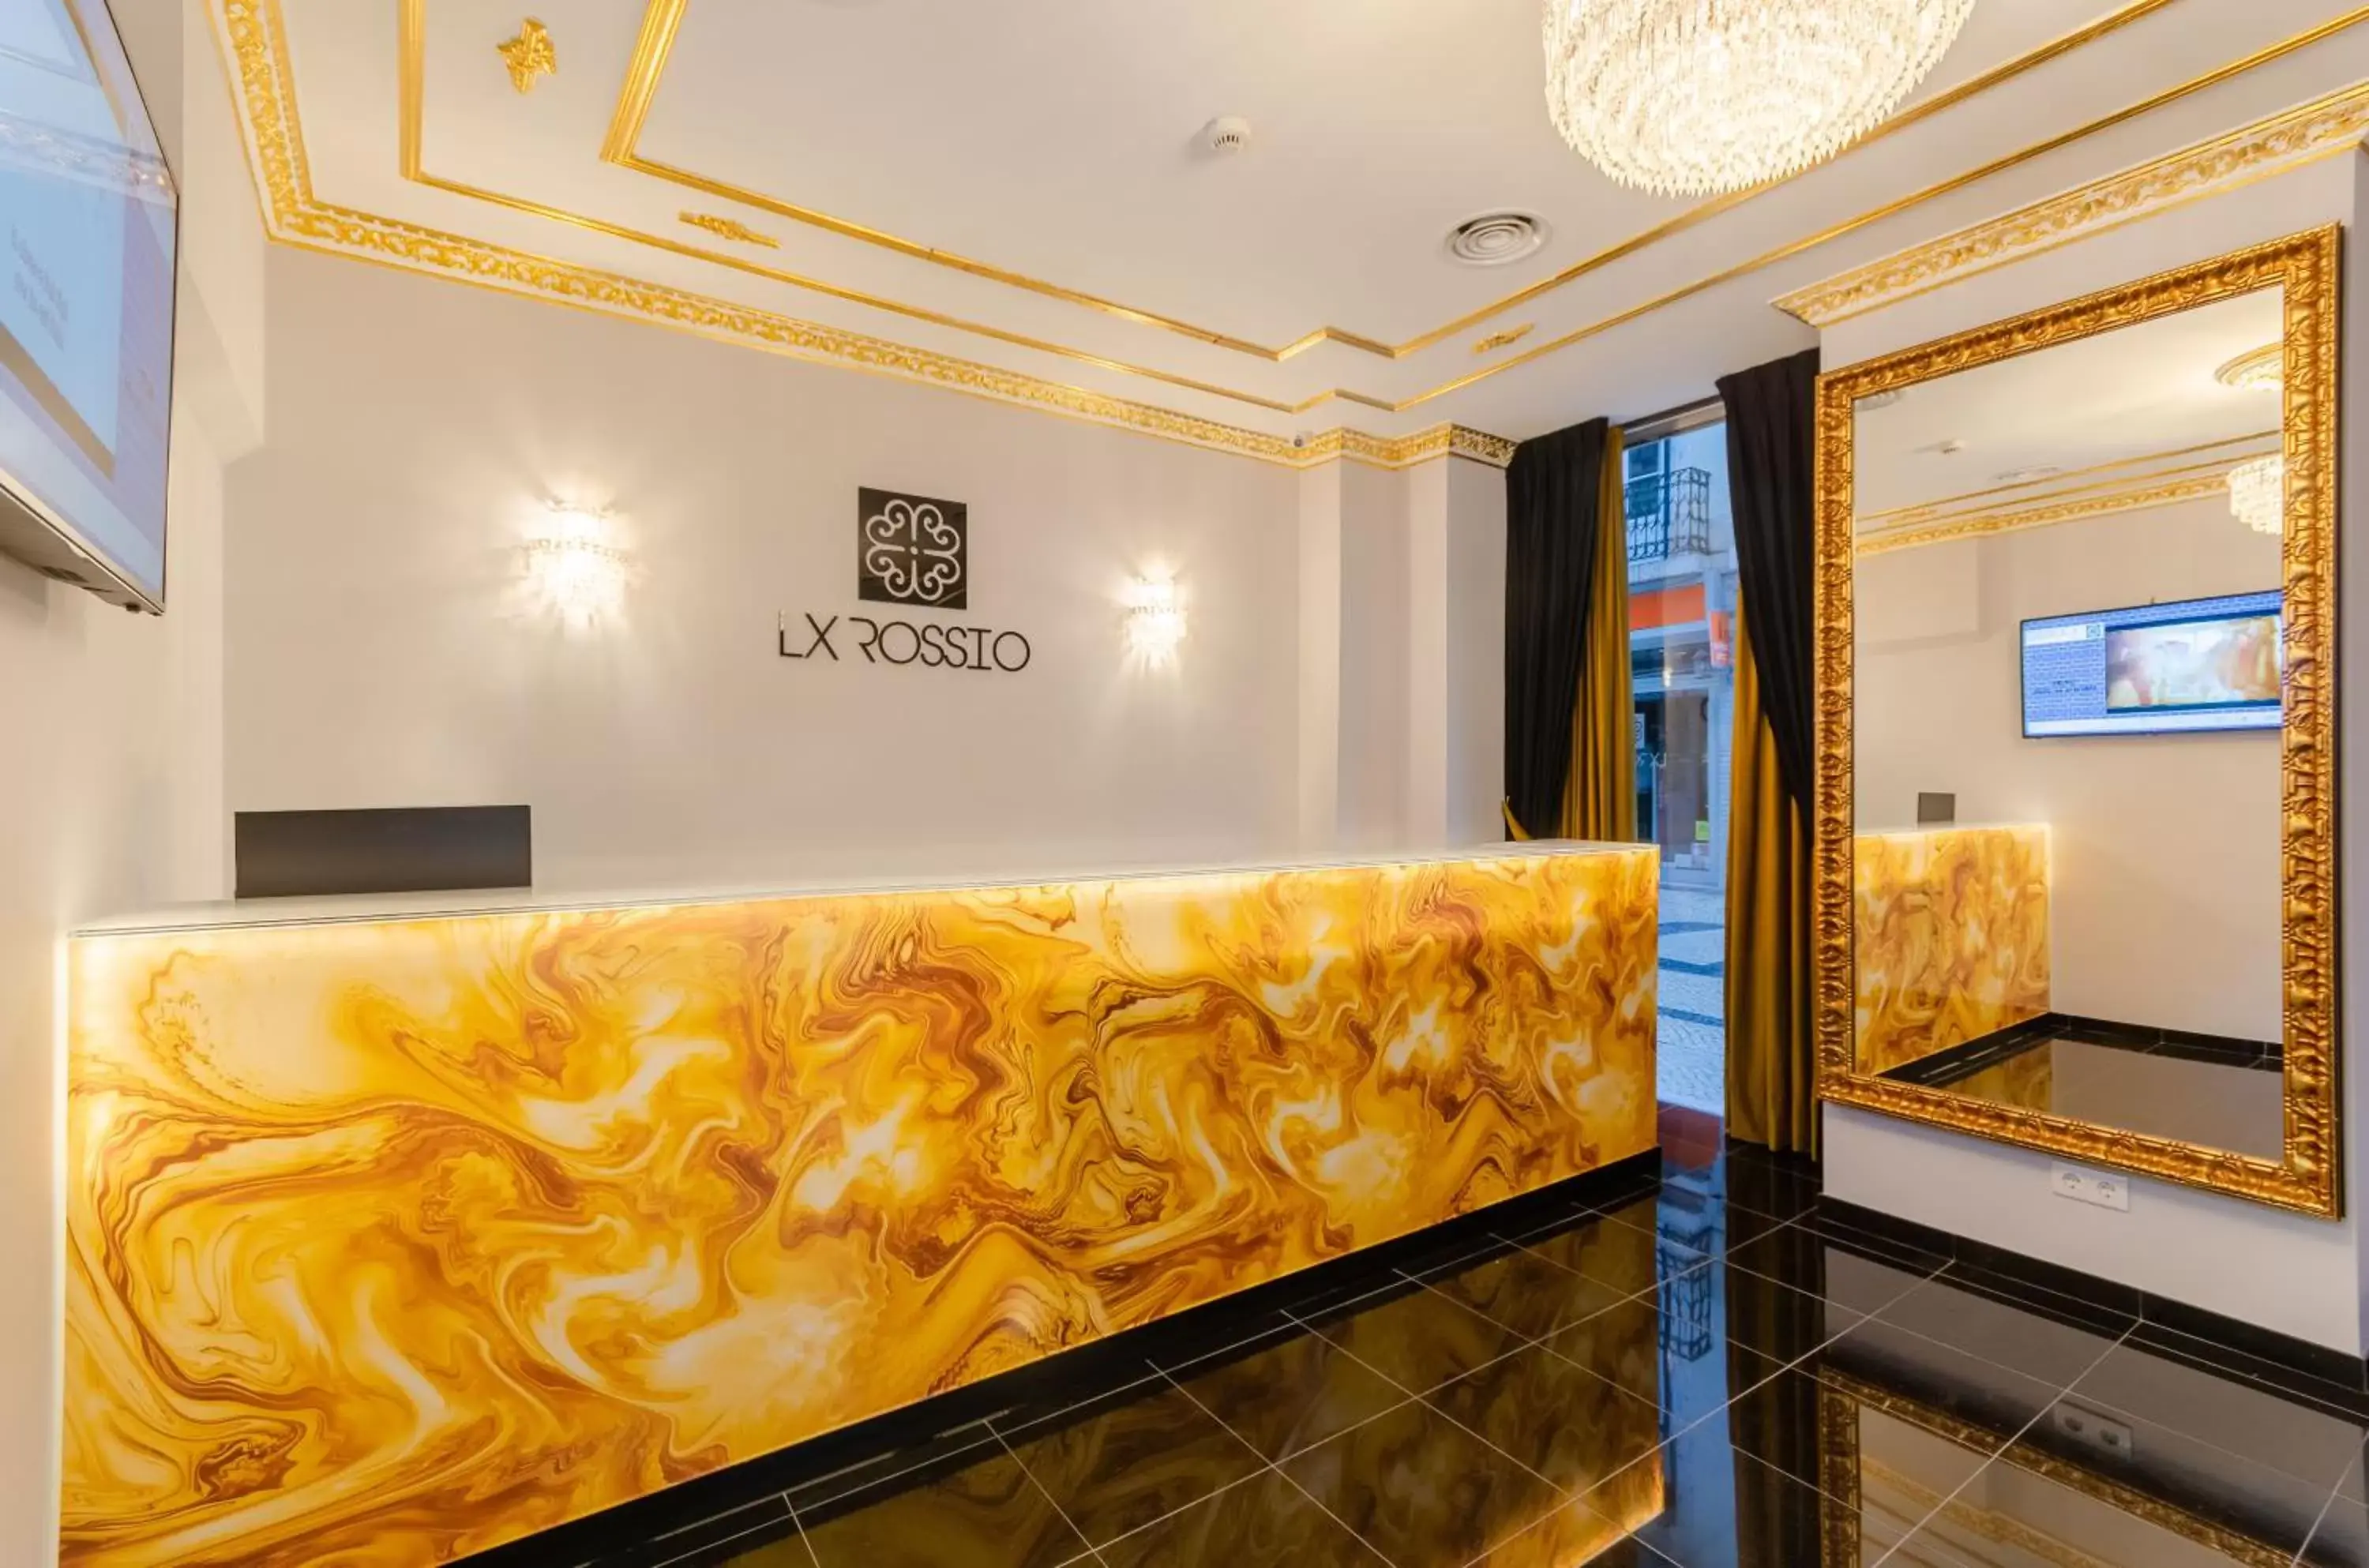 Lobby or reception, Lobby/Reception in Hotel LX Rossio